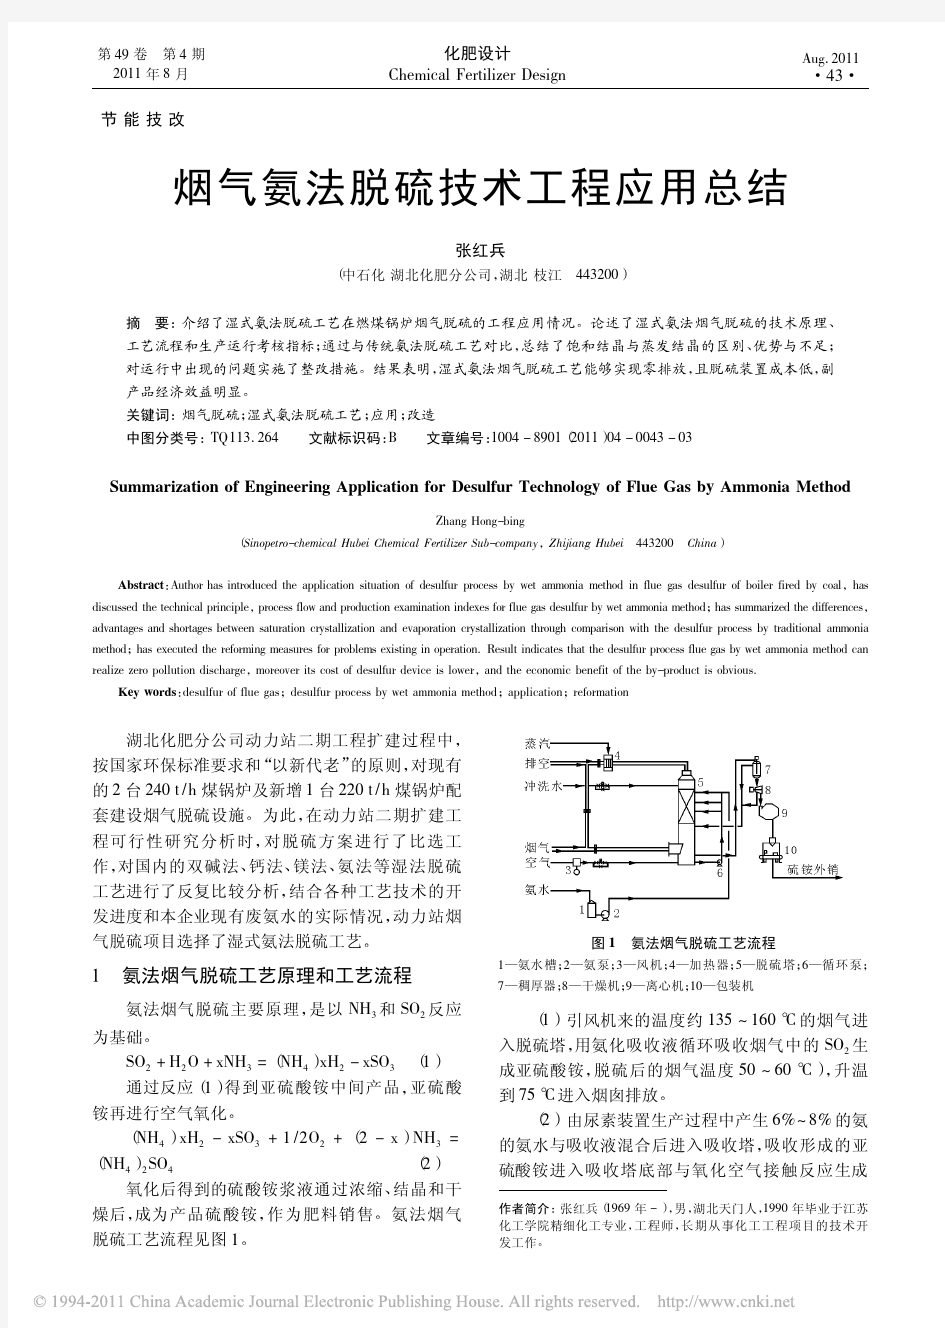 烟气氨法脱硫技术工程应用总结 